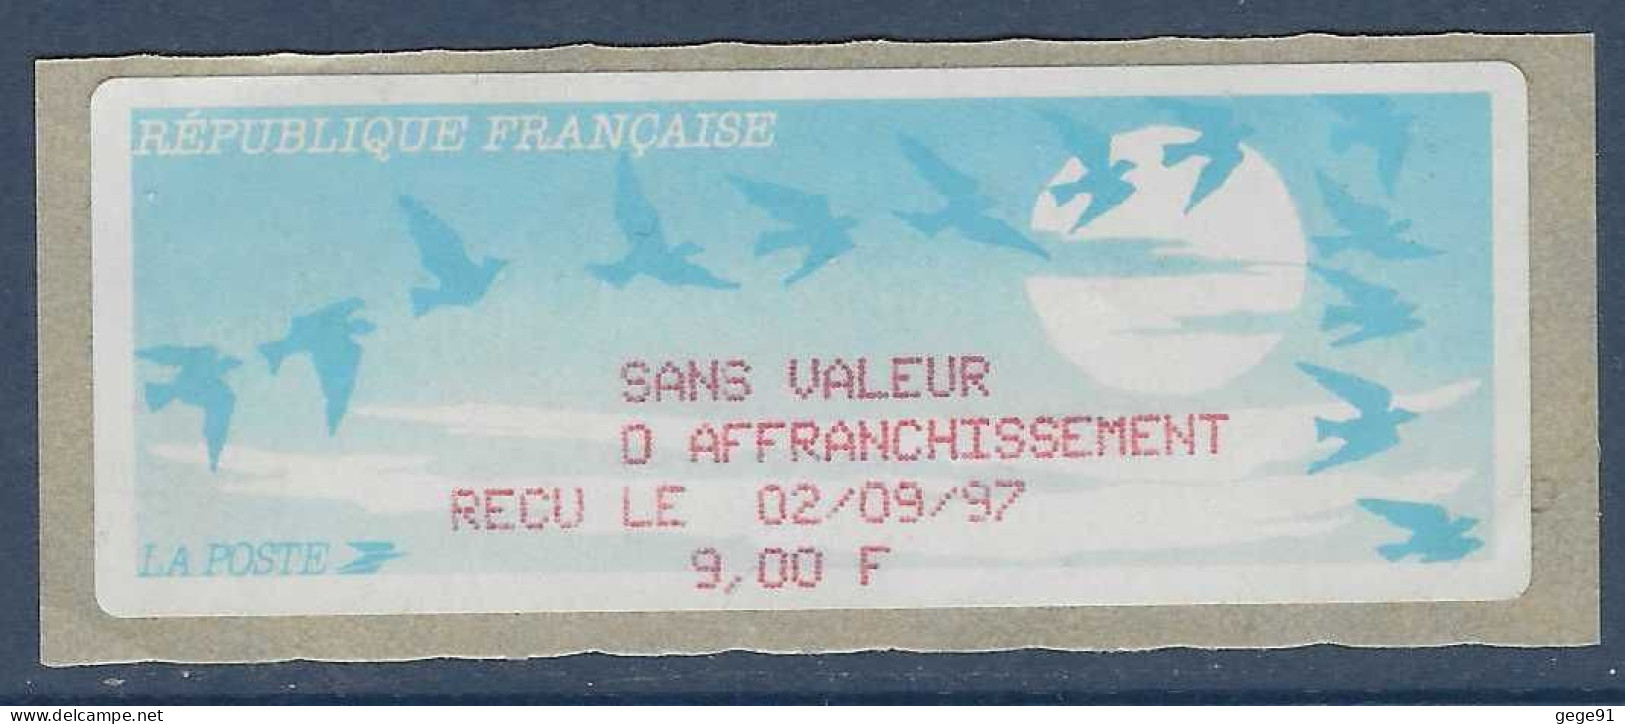 Reçu De Vignette De Distributeur LISA - ATM - Oiseaux De Jubert - En Francs - 1990 Type « Oiseaux De Jubert »